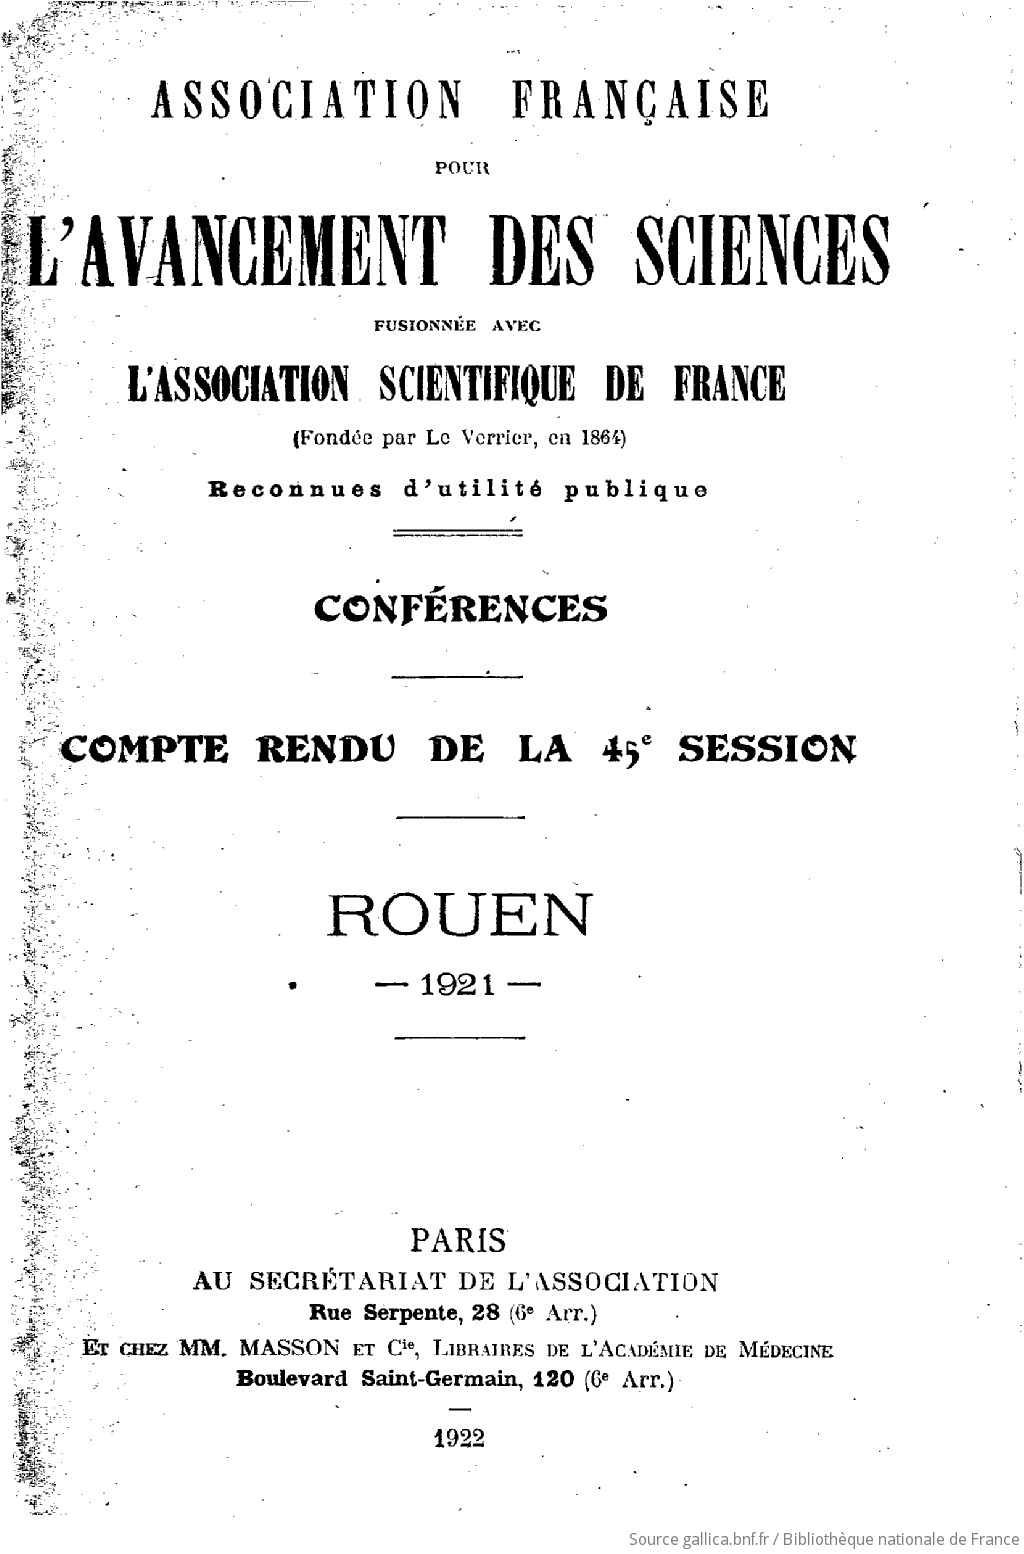 Conférences : compte-rendu de la 45e session, Rouen 1921 / Association française pour l'avancement des sciences...